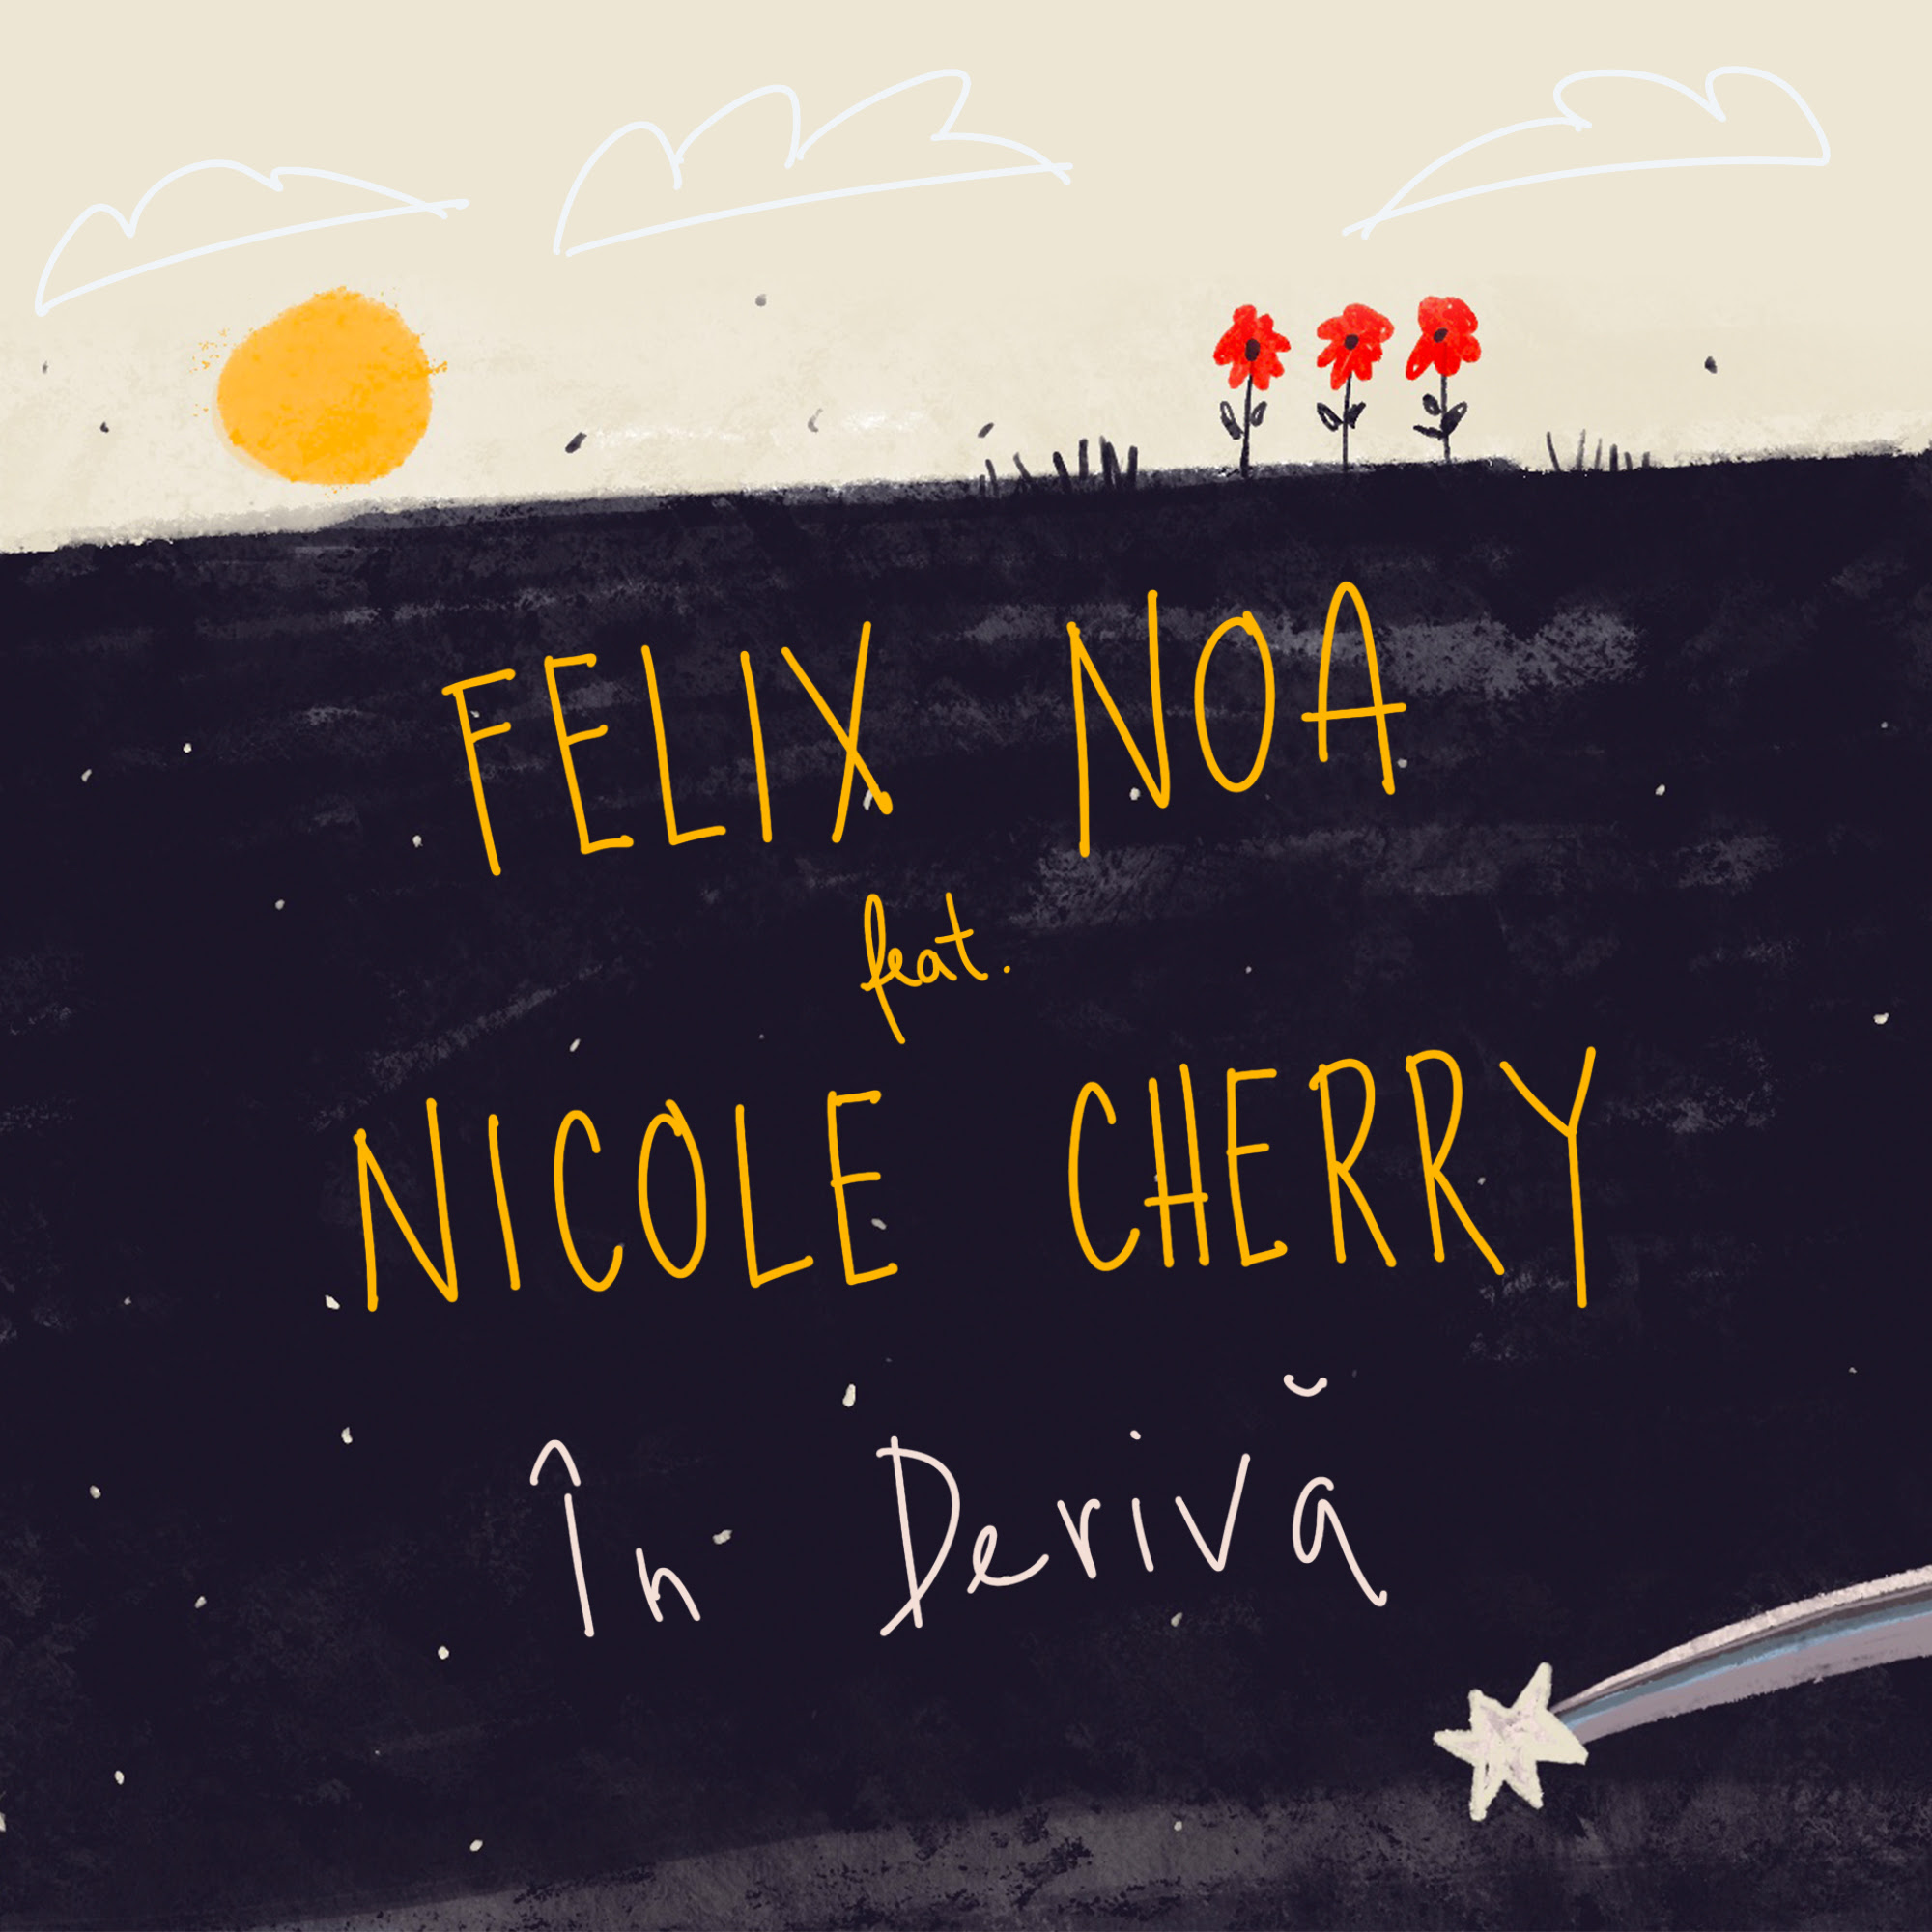 Update your playlist! Nicole Cherry și Felix Noa au lansat În derivă. Enjoy it!